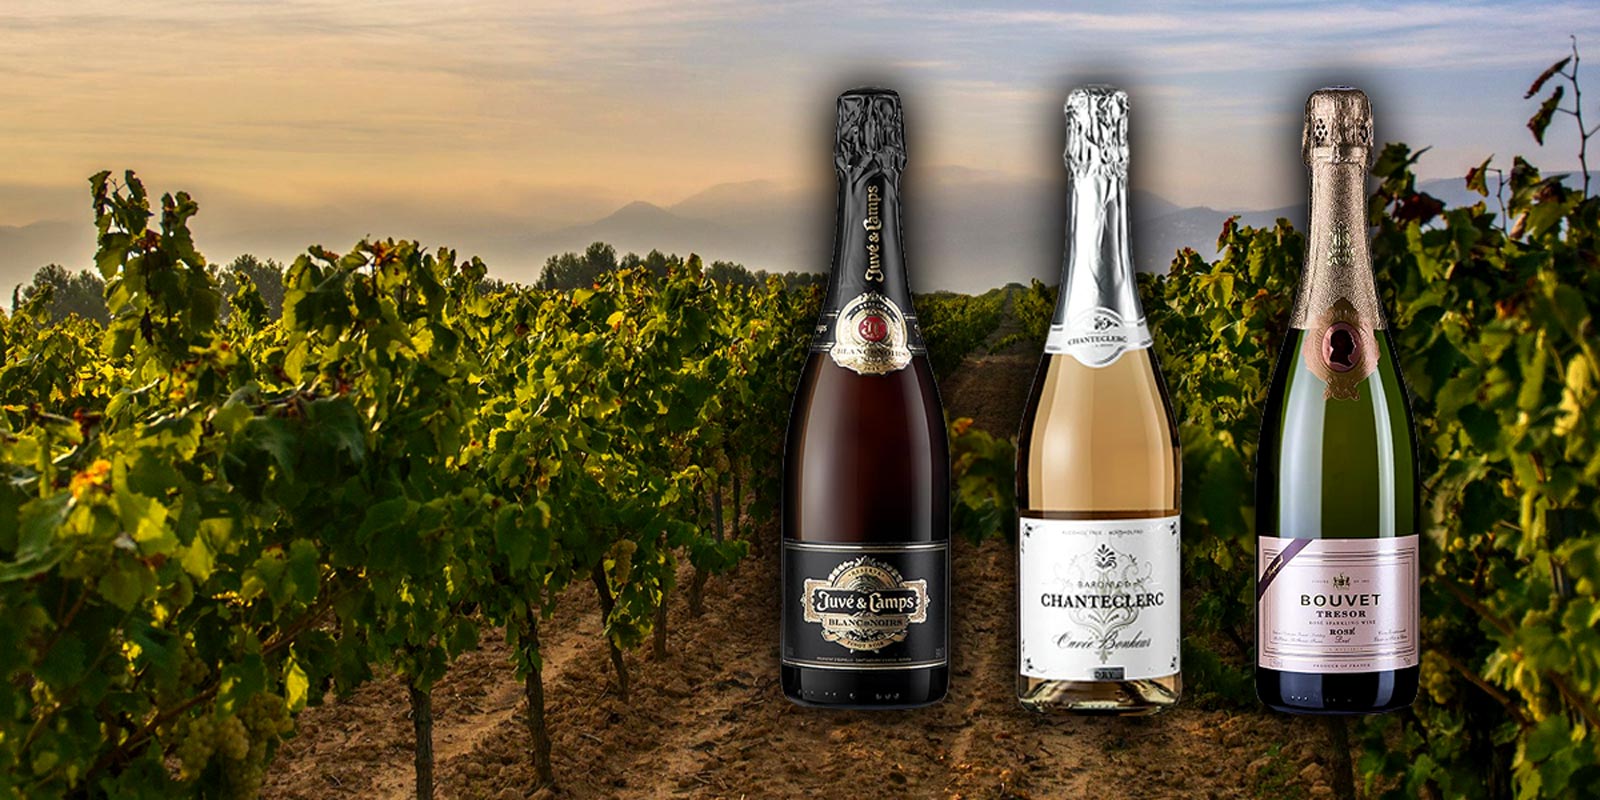 Cremant en Franse mousserende wijn De Cremant de Loire wordt ook wel de Champanger van de Loire genoemd. Net als de champagne wordt de cremant geproduceerd via het gistingsproces op fles.